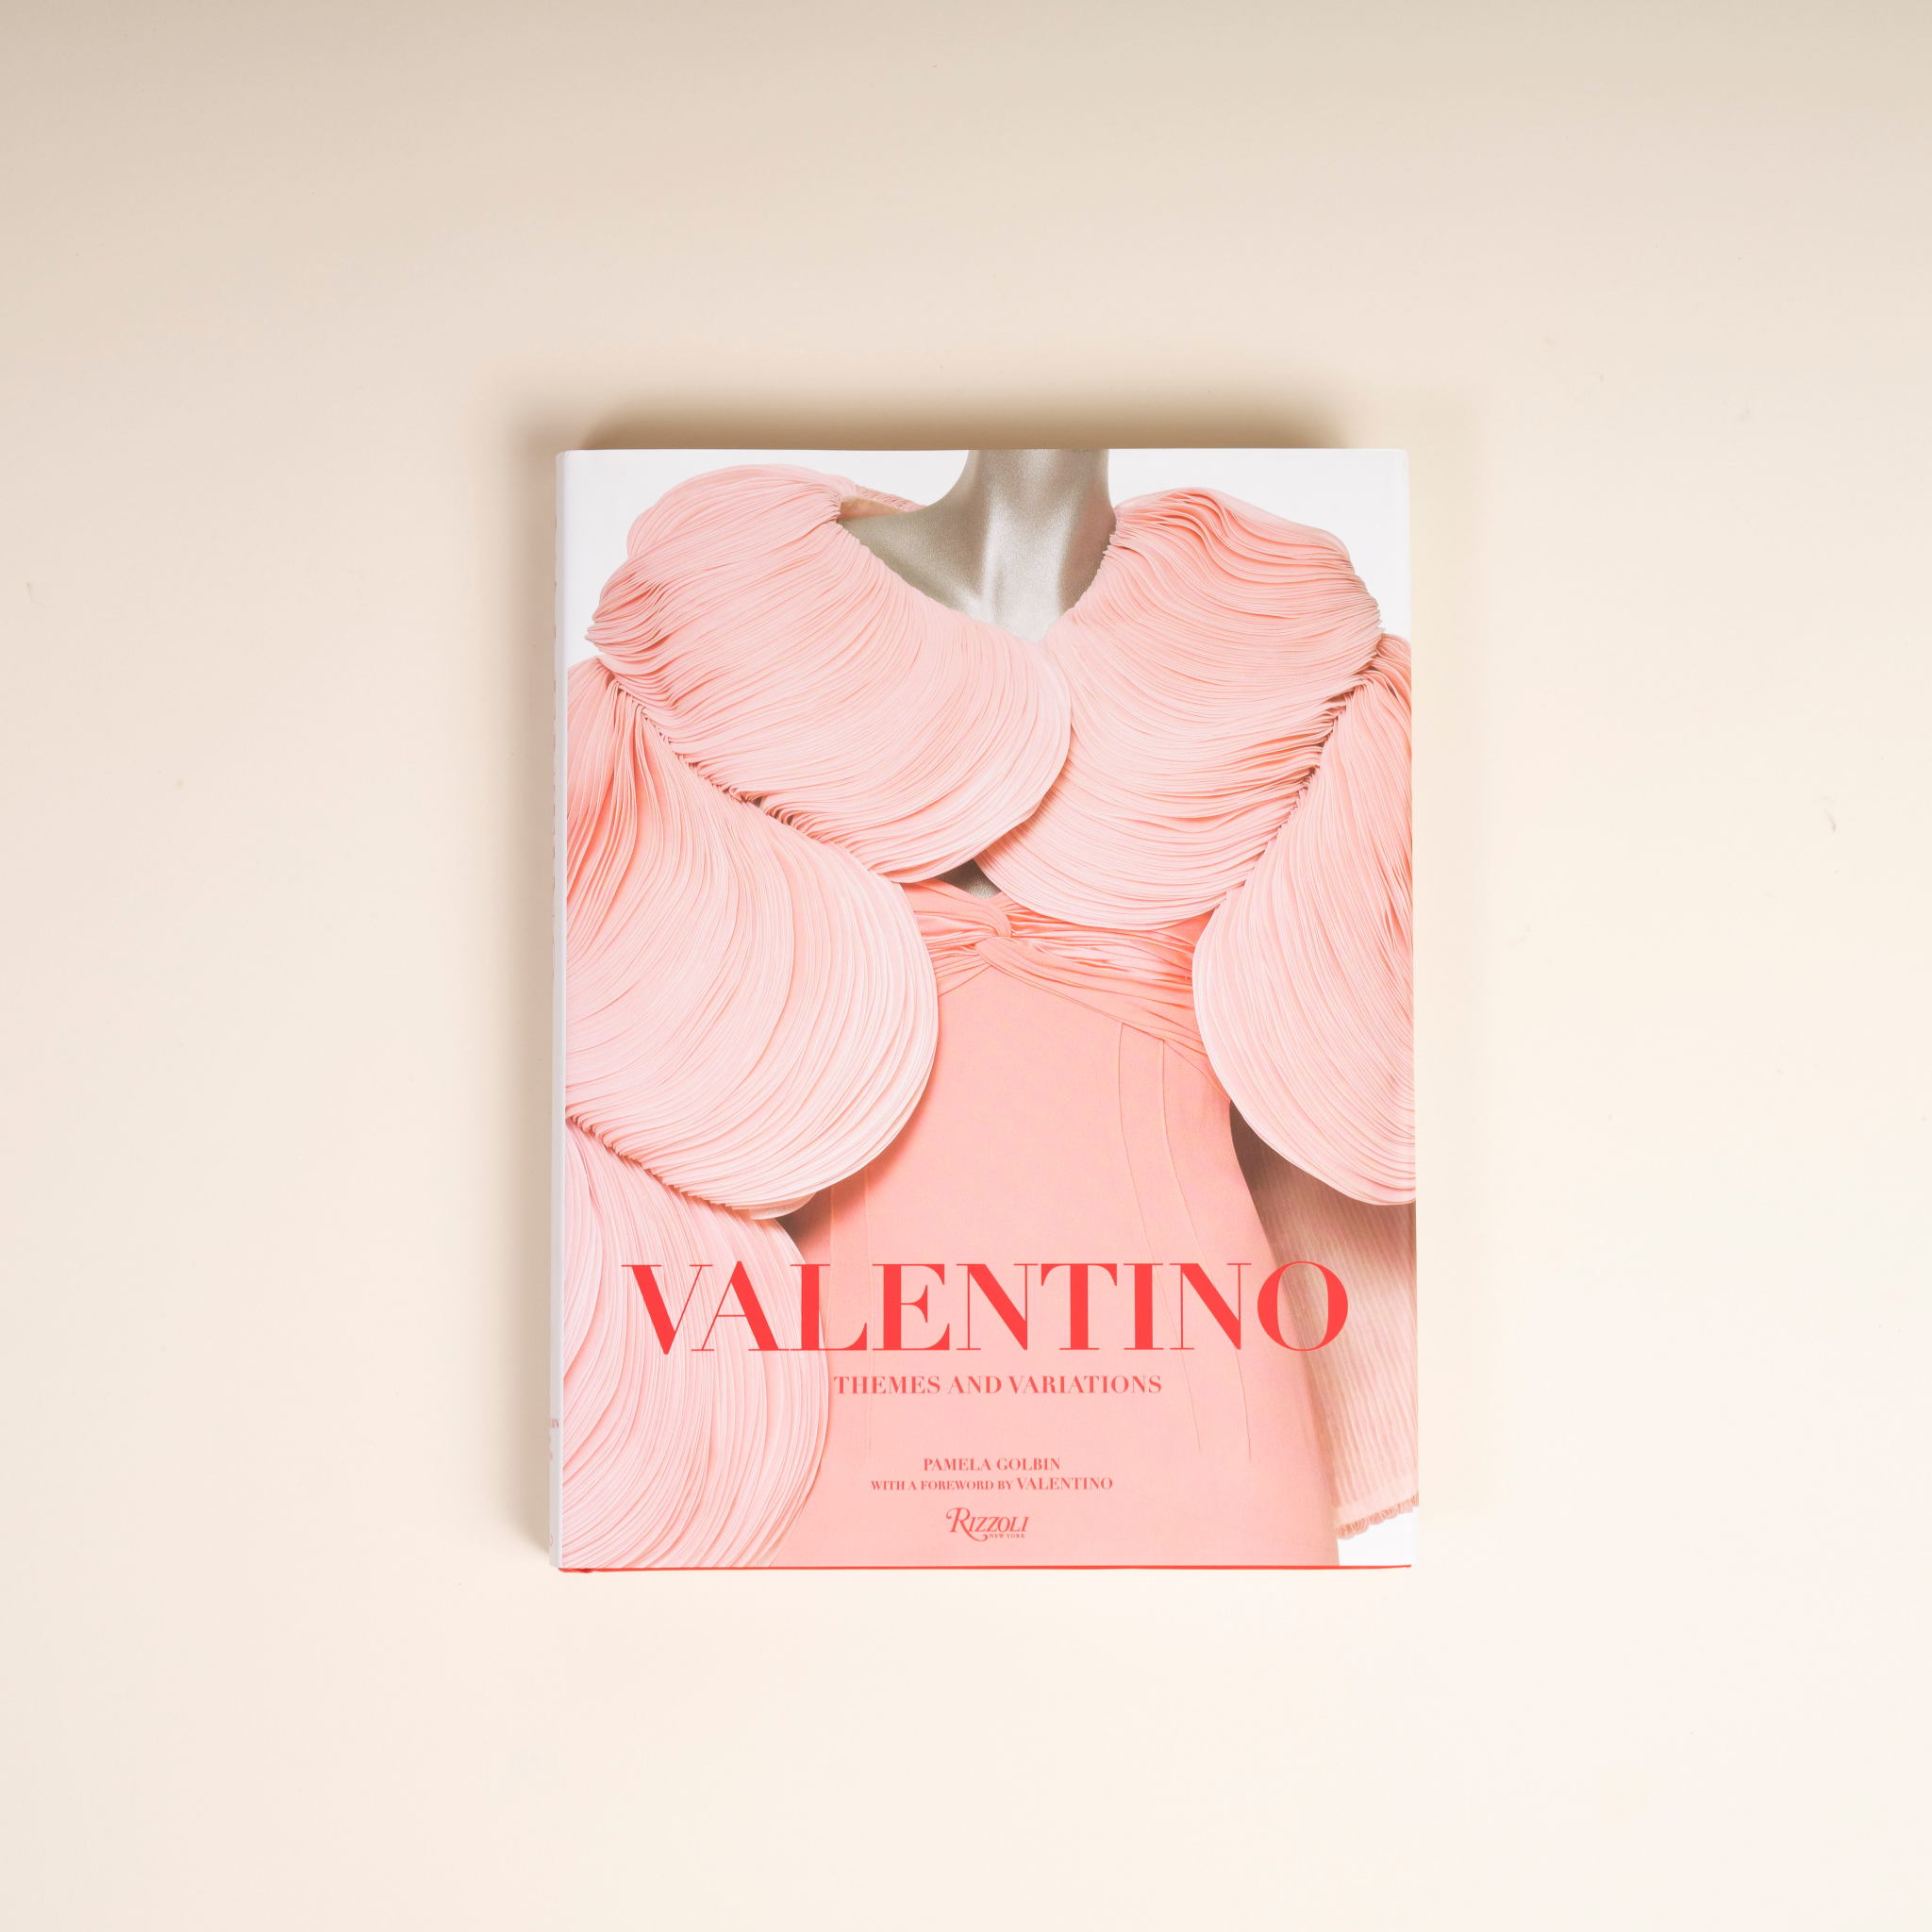 Libro Valentino